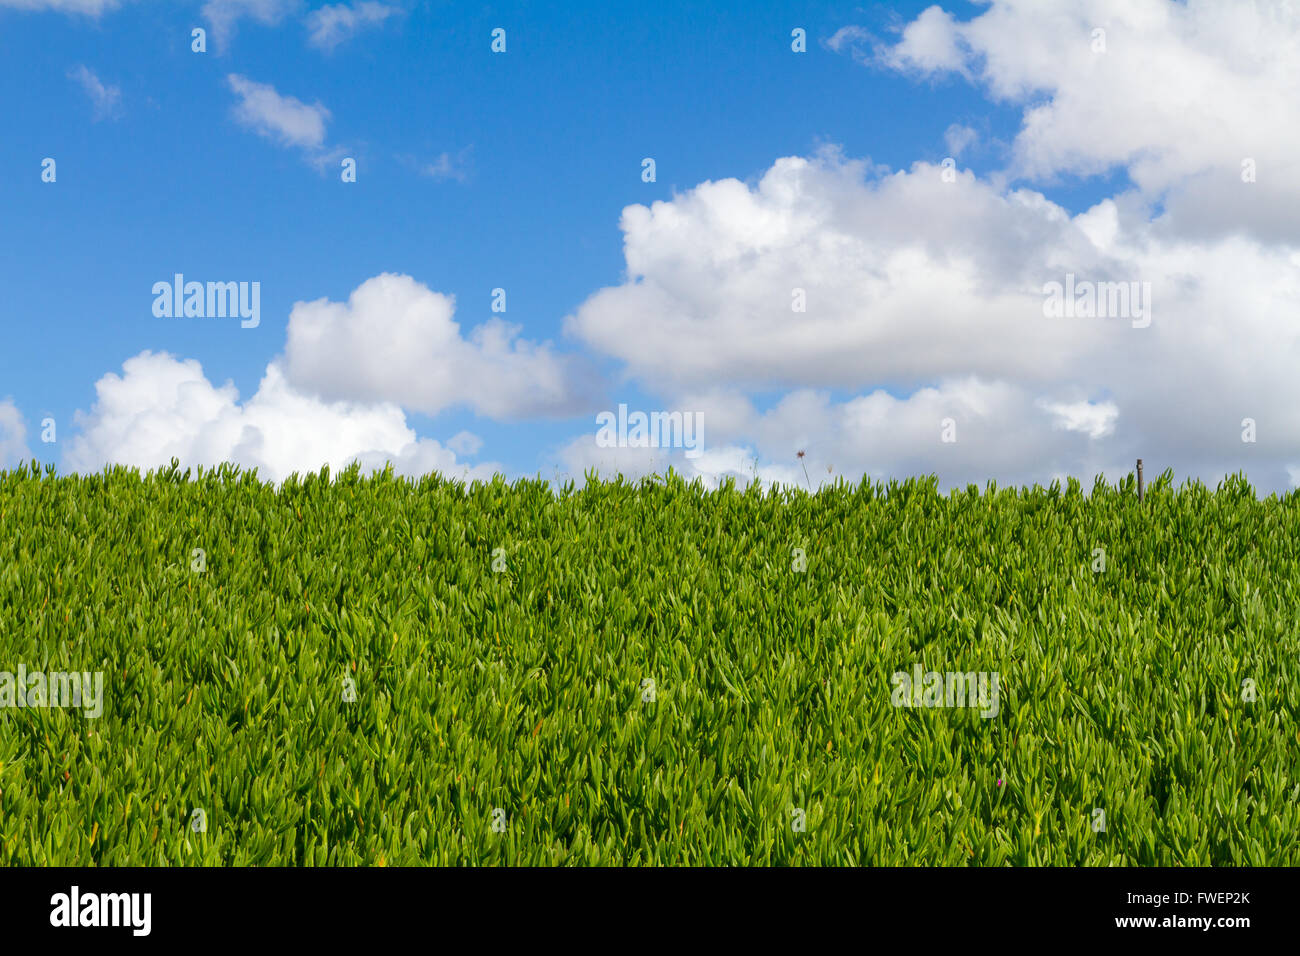 Questa unica immagine astratta mostra una copertura di vegetazione tropicale piante e alcuni cielo blu con nuvole. Questo è un grande imag Foto Stock